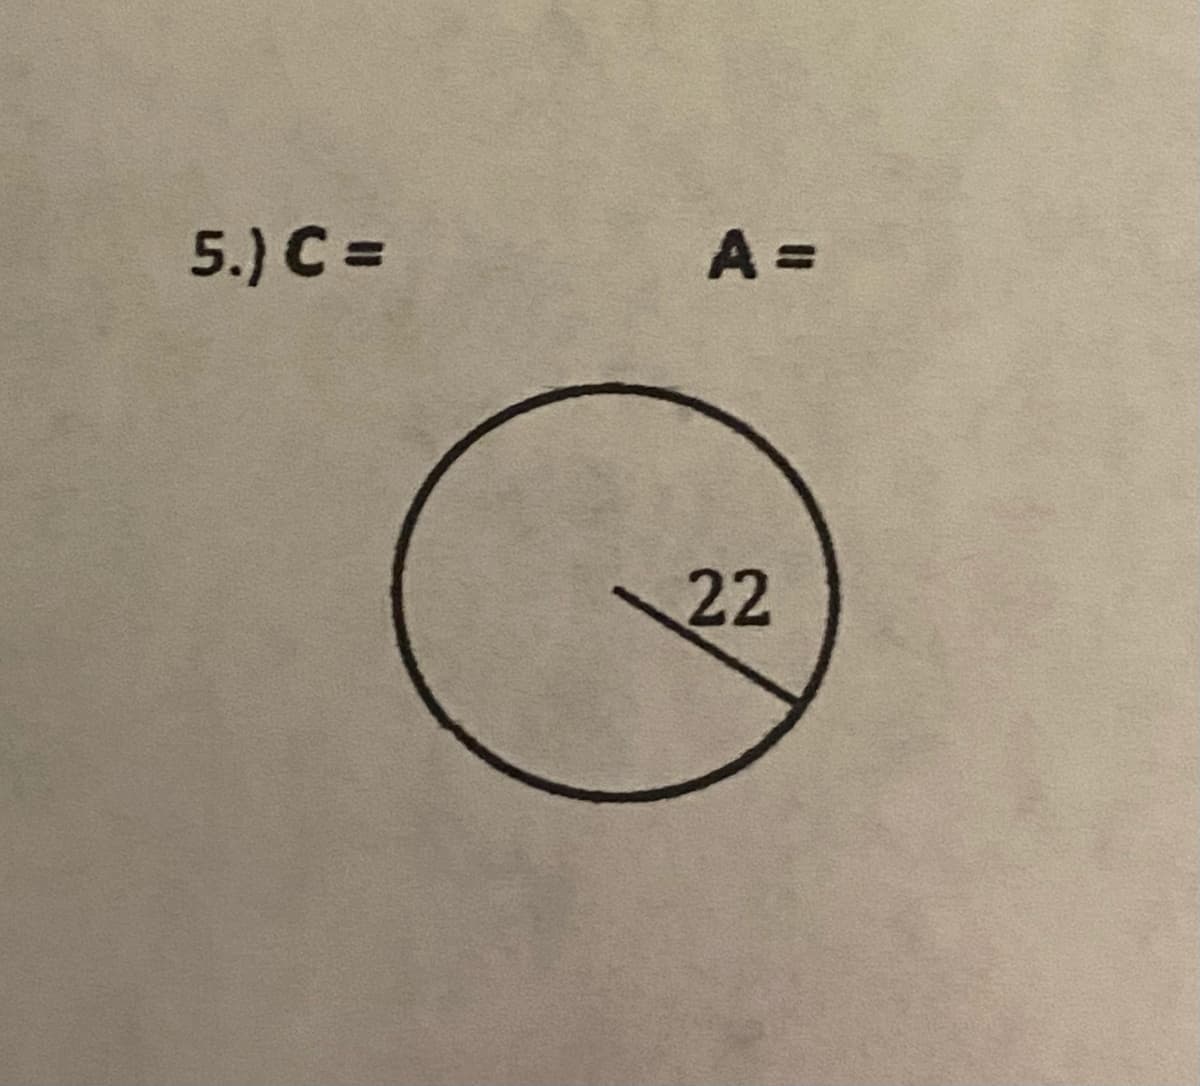 5.) C =
A =
22
